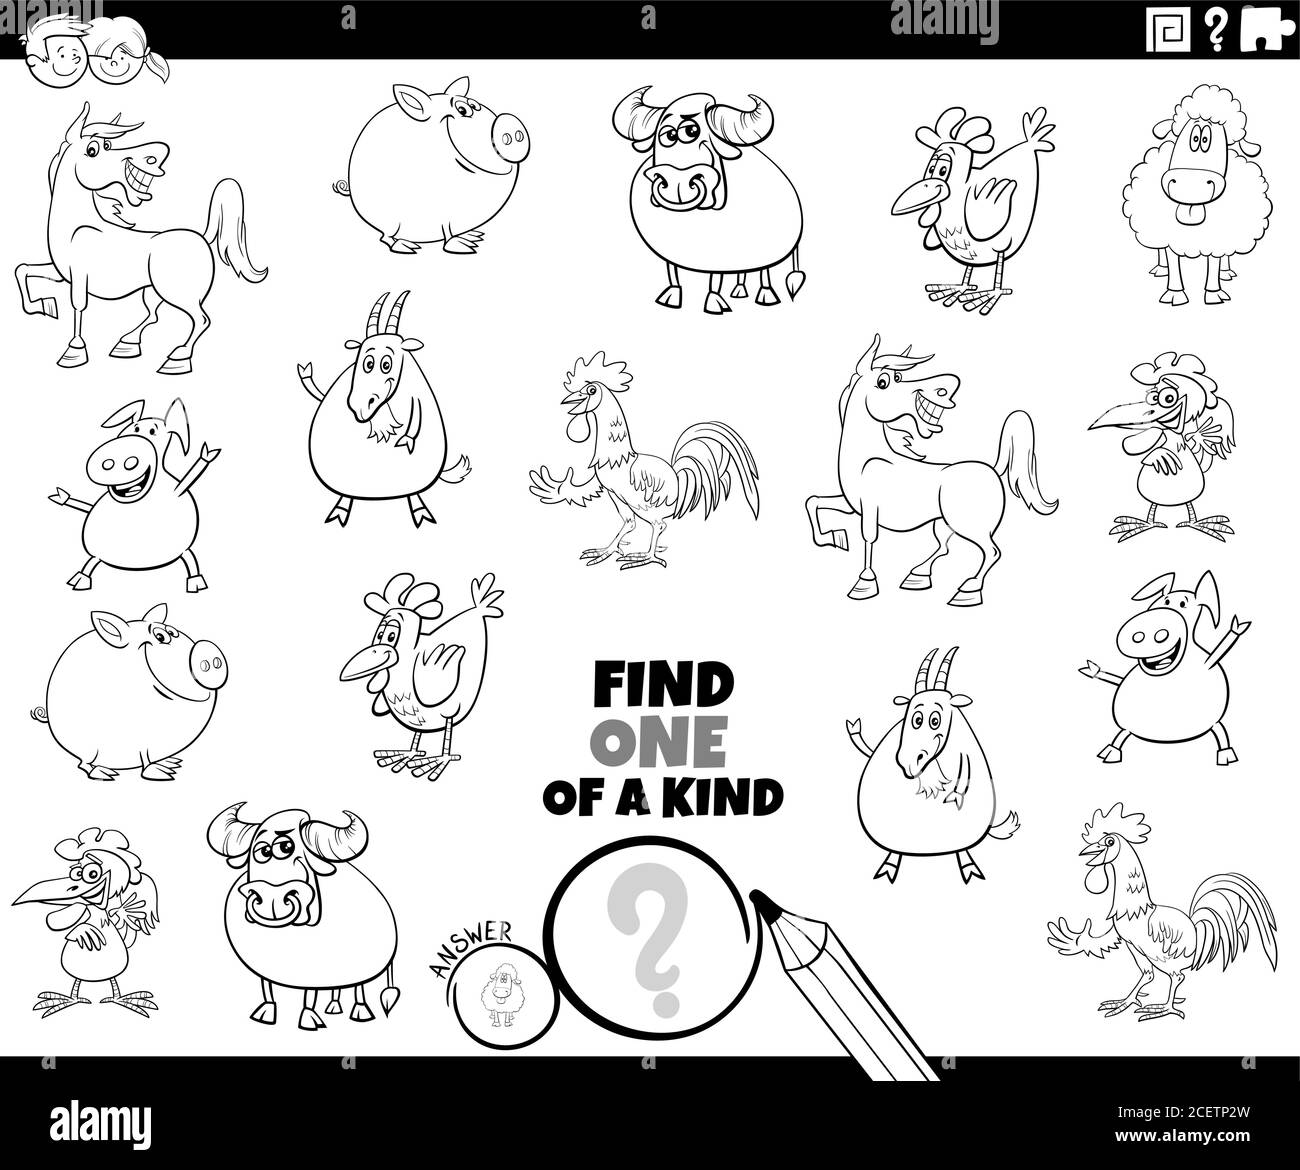 Dessin animé noir et blanc Illustration de trouver un de Genre image jeu éducatif avec la couleur de personnages de ferme comique d'animal Page de livre Illustration de Vecteur